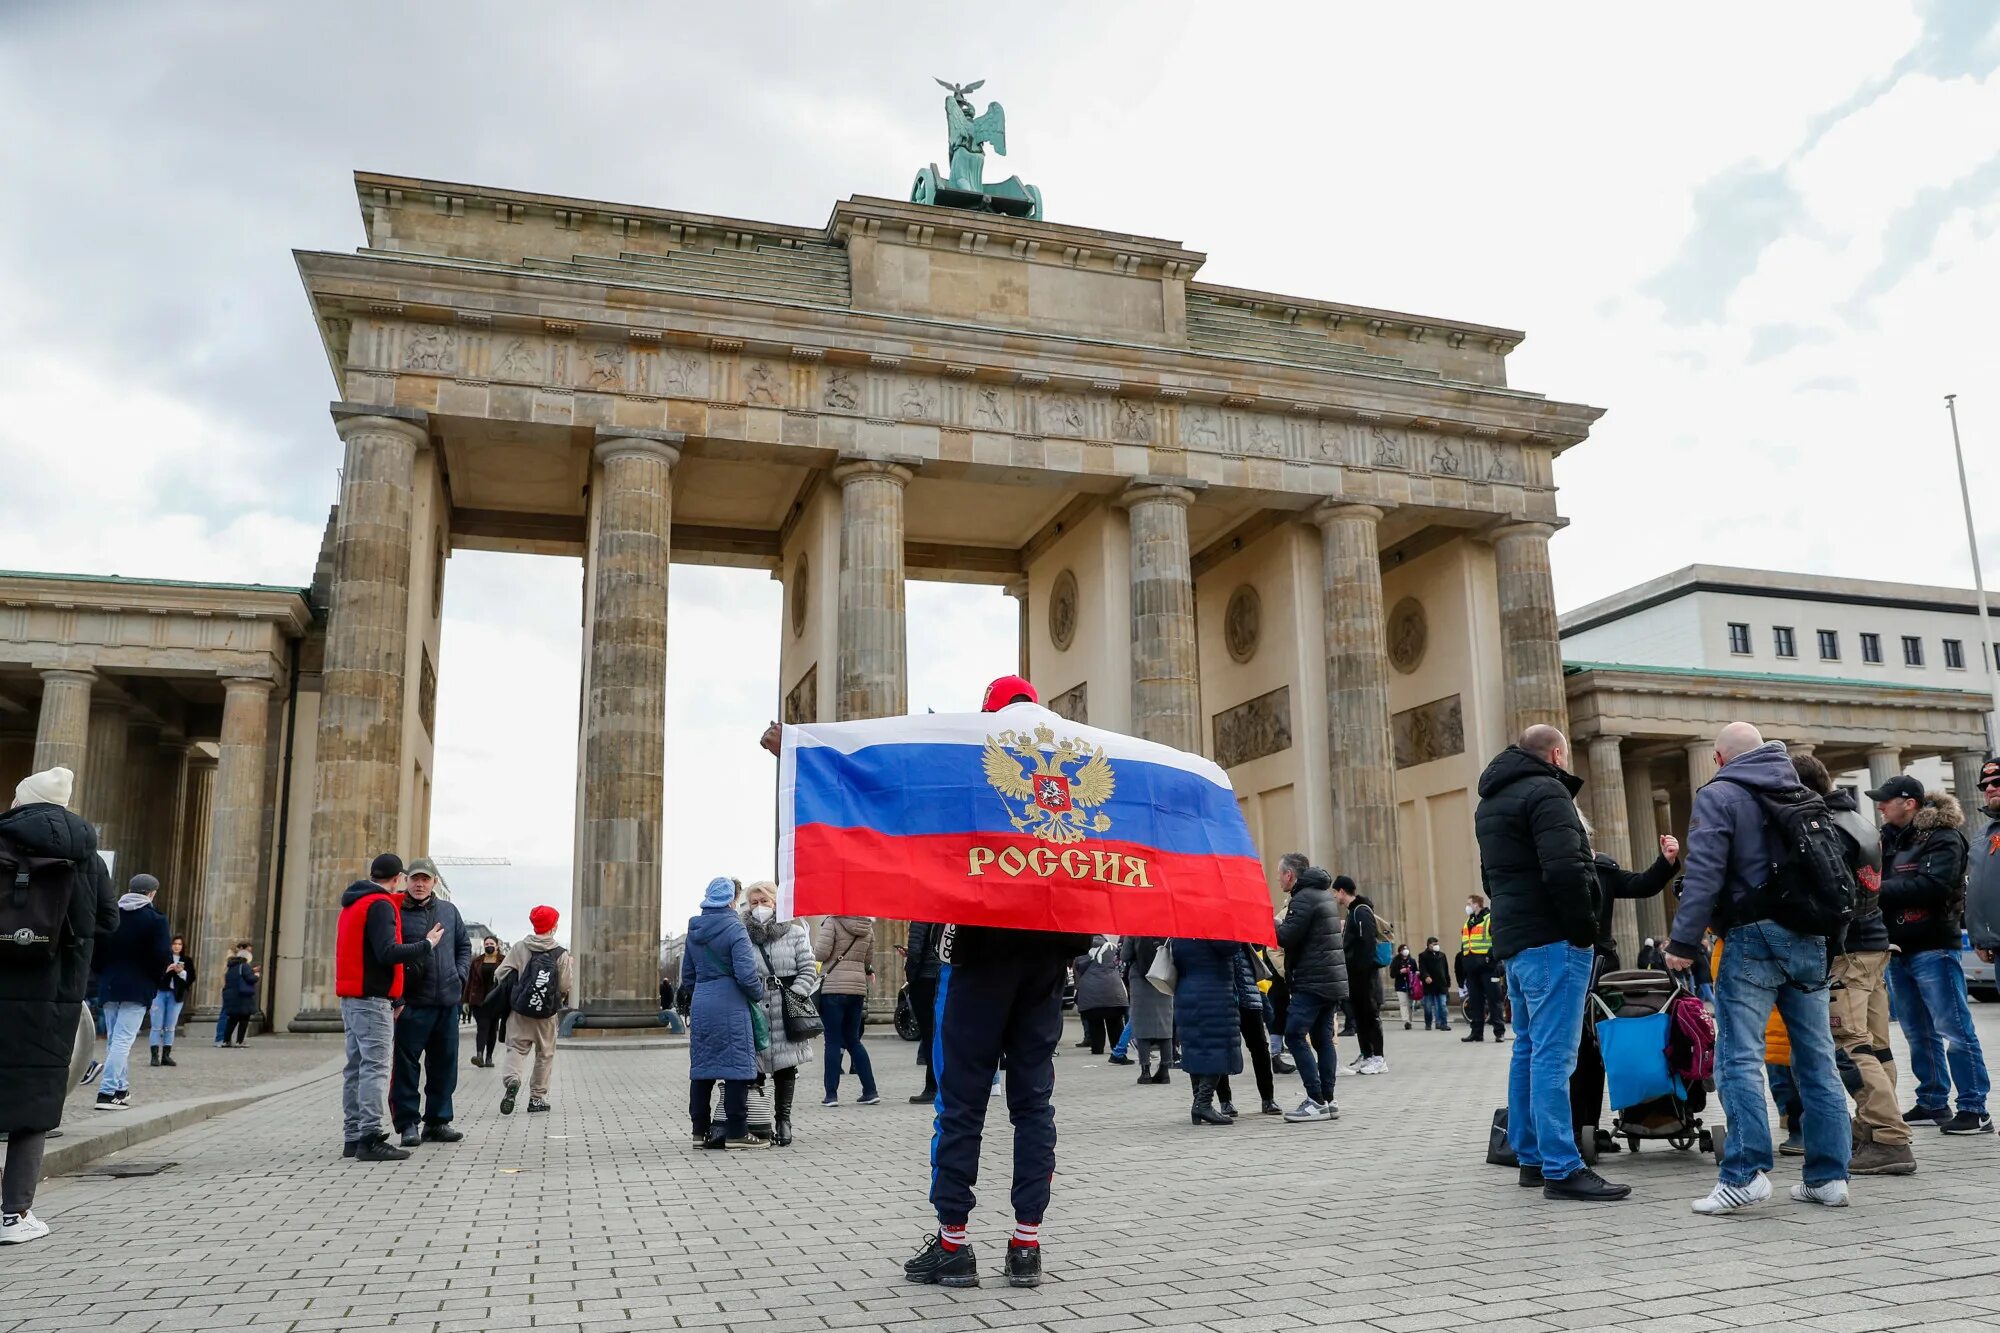 Бранденбургские ворота в Берлине российский флаг. Германия Берлин. Жители Германии. Россия и Германия. Санкции против германии